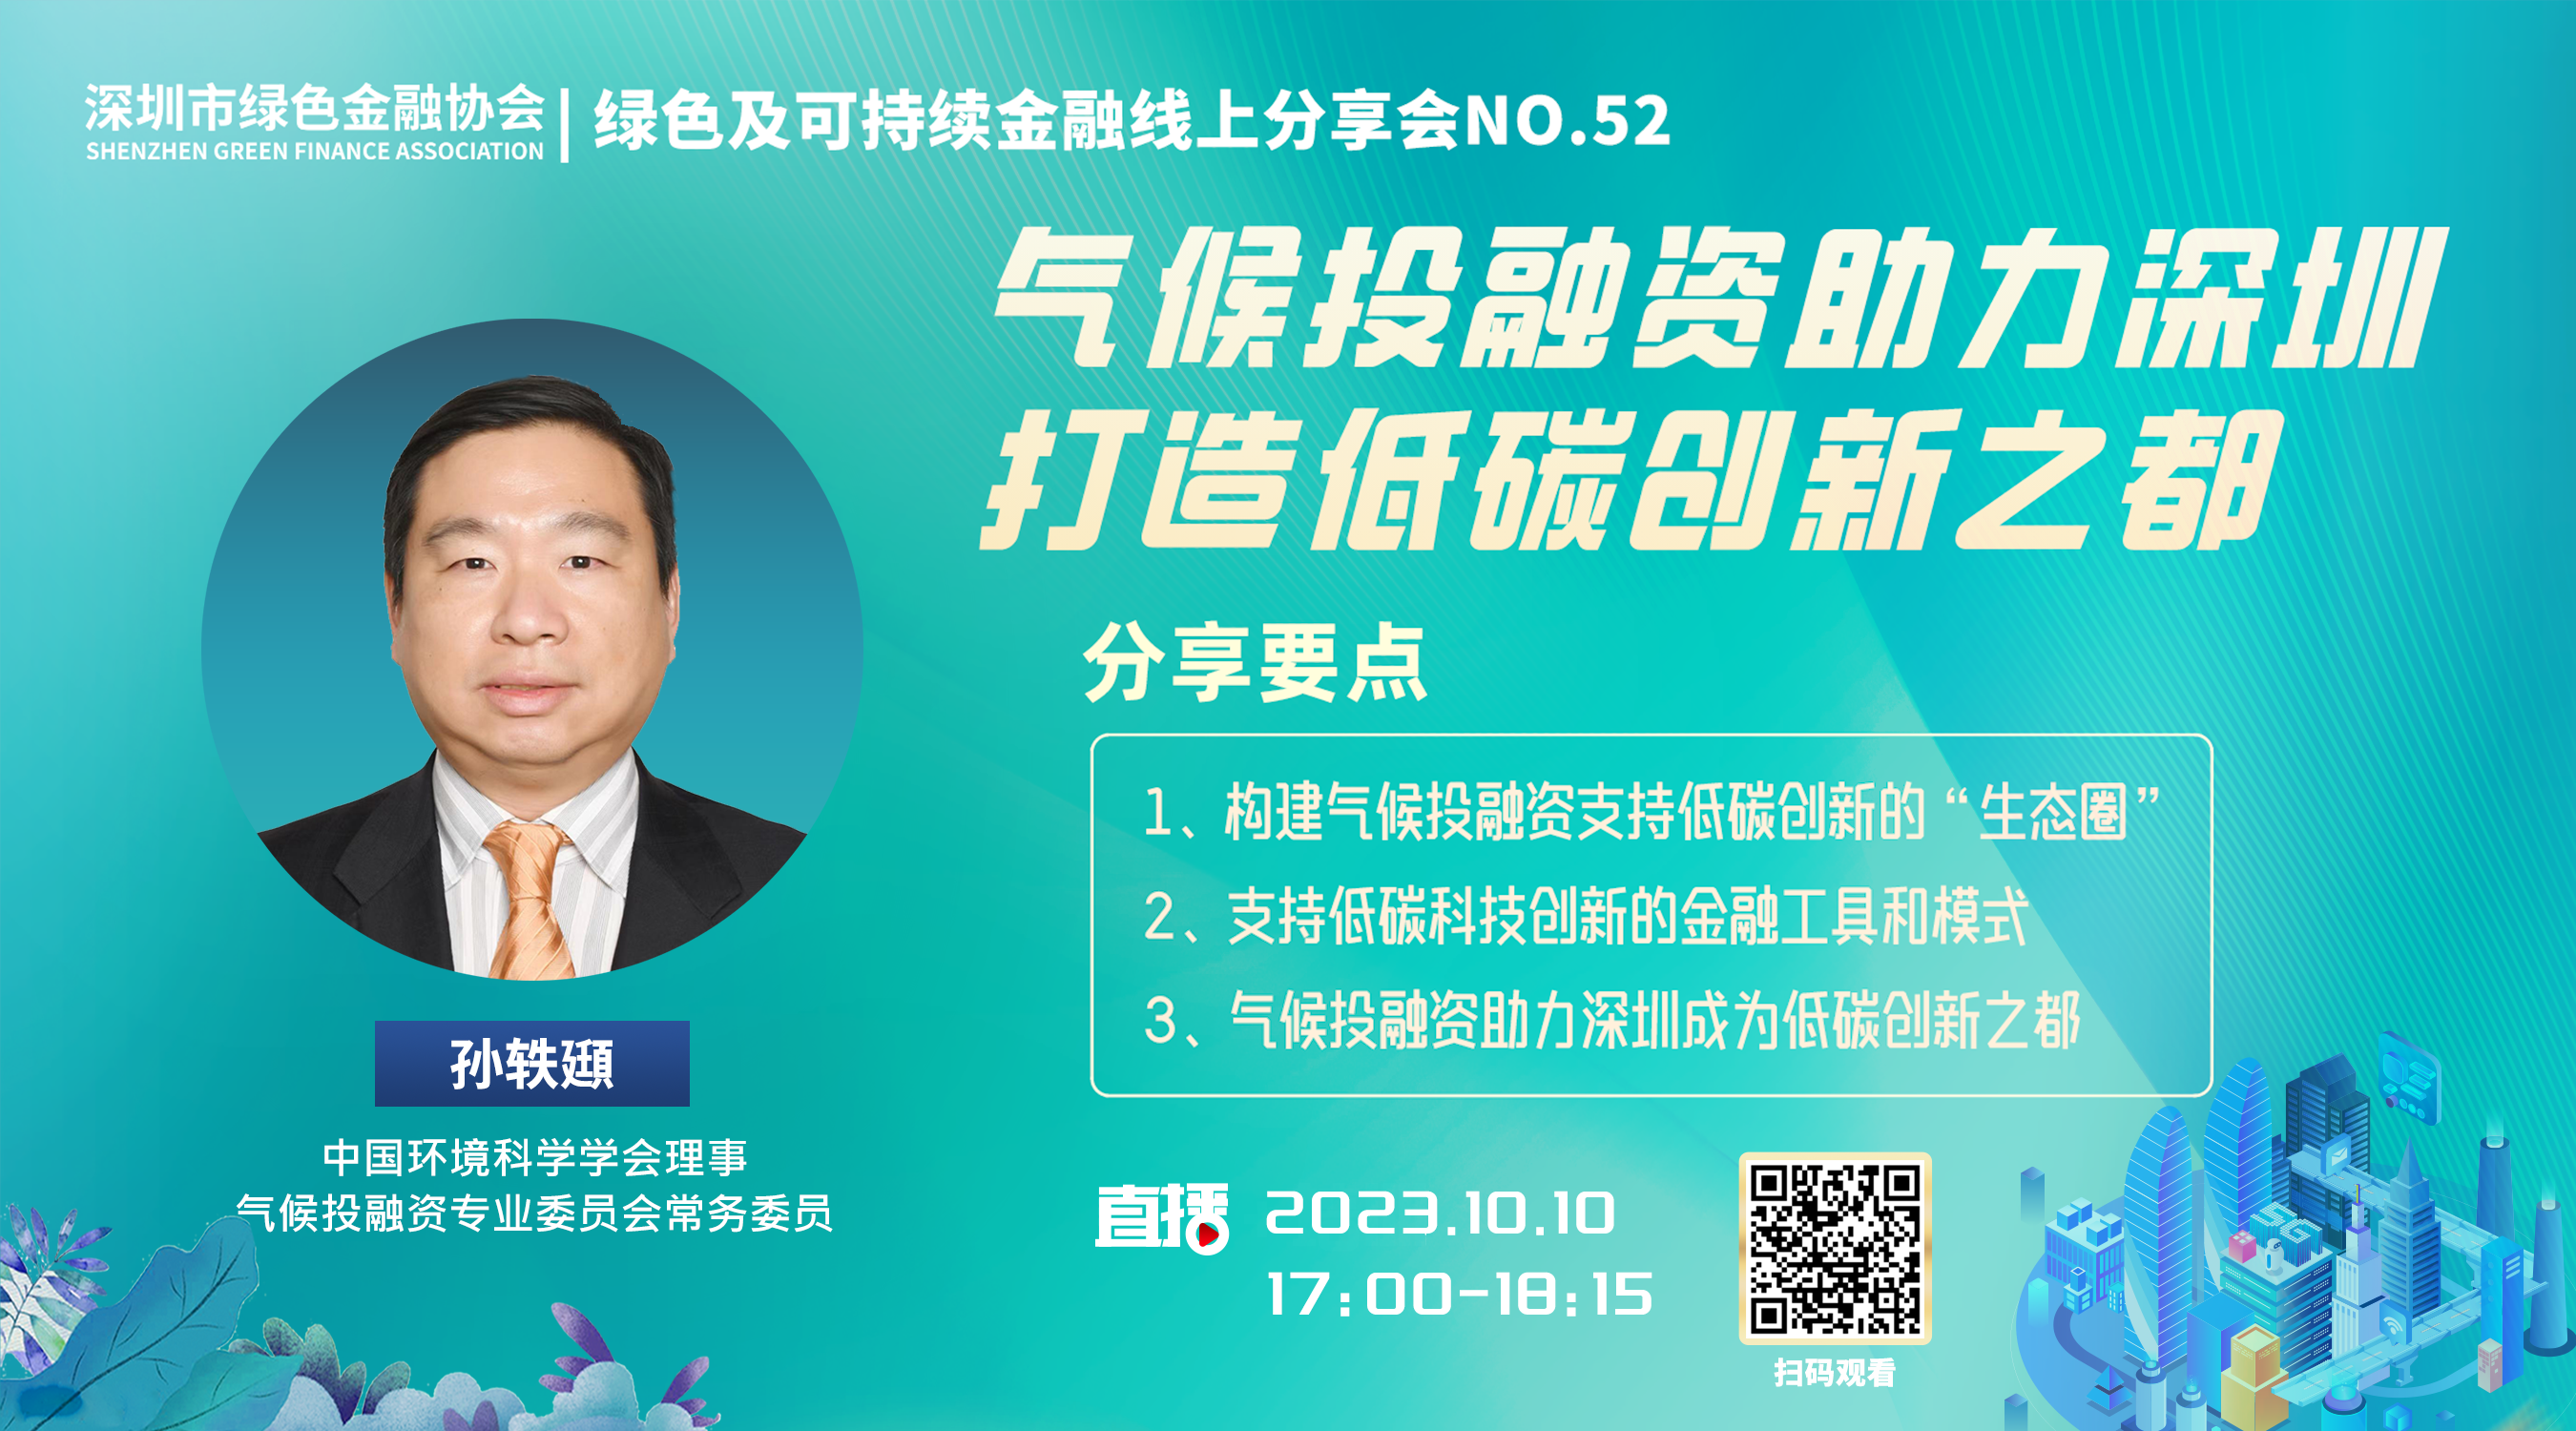 【线上分享会】深圳市绿色金融协会绿色及可持续金融线上分享会NO.52#成功举行